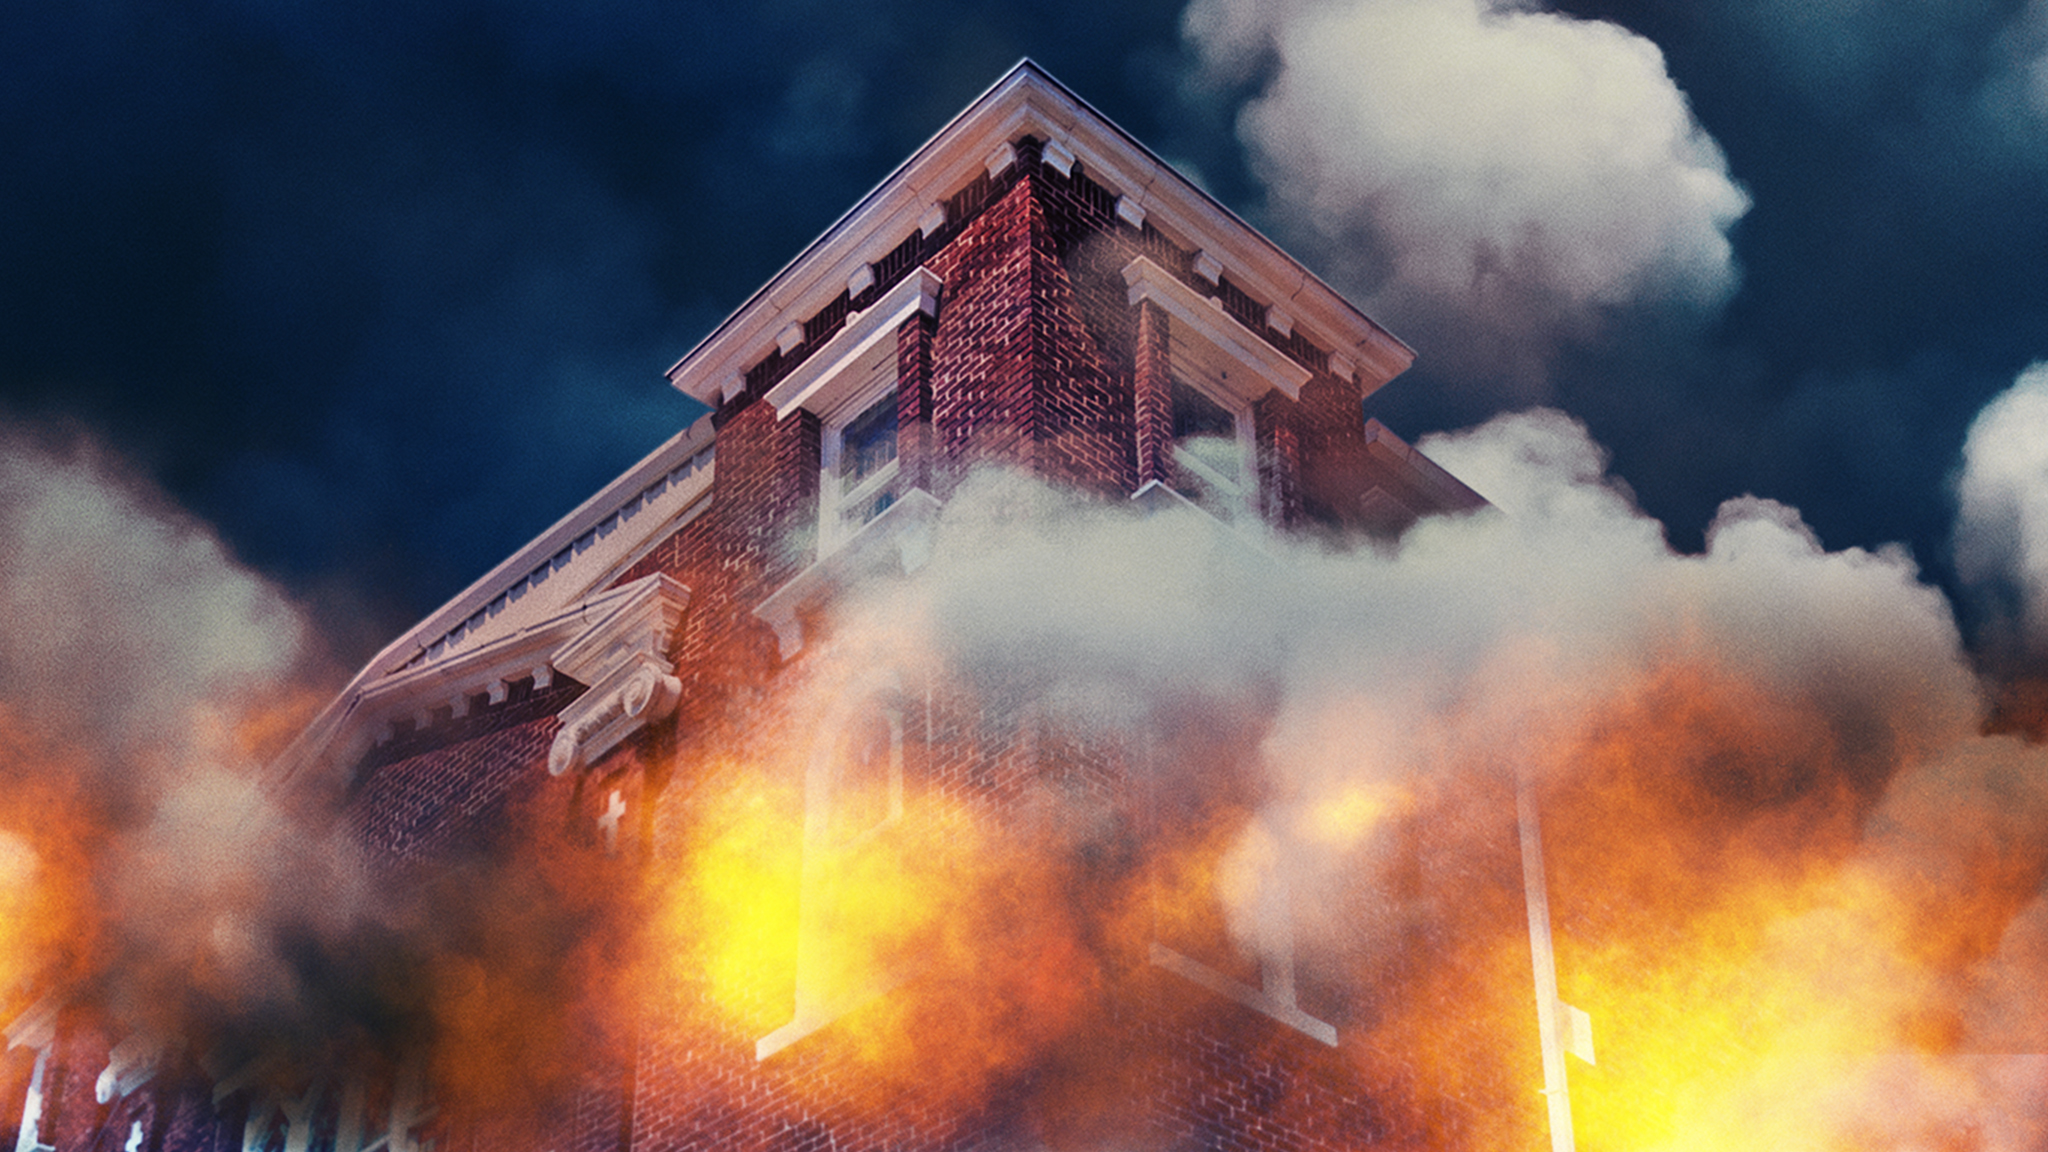  Cena do documentário Tulsa Burning: The 1921 Race Massacre. A imagem mostra a esquina de um prédio de tijolos vermelhos em chamas, visto de cima para baixo. O céu é azul escuro e é tomado por uma fumaça cinza, que surge do fogo que sai de dentro das janelas brancas do prédio.